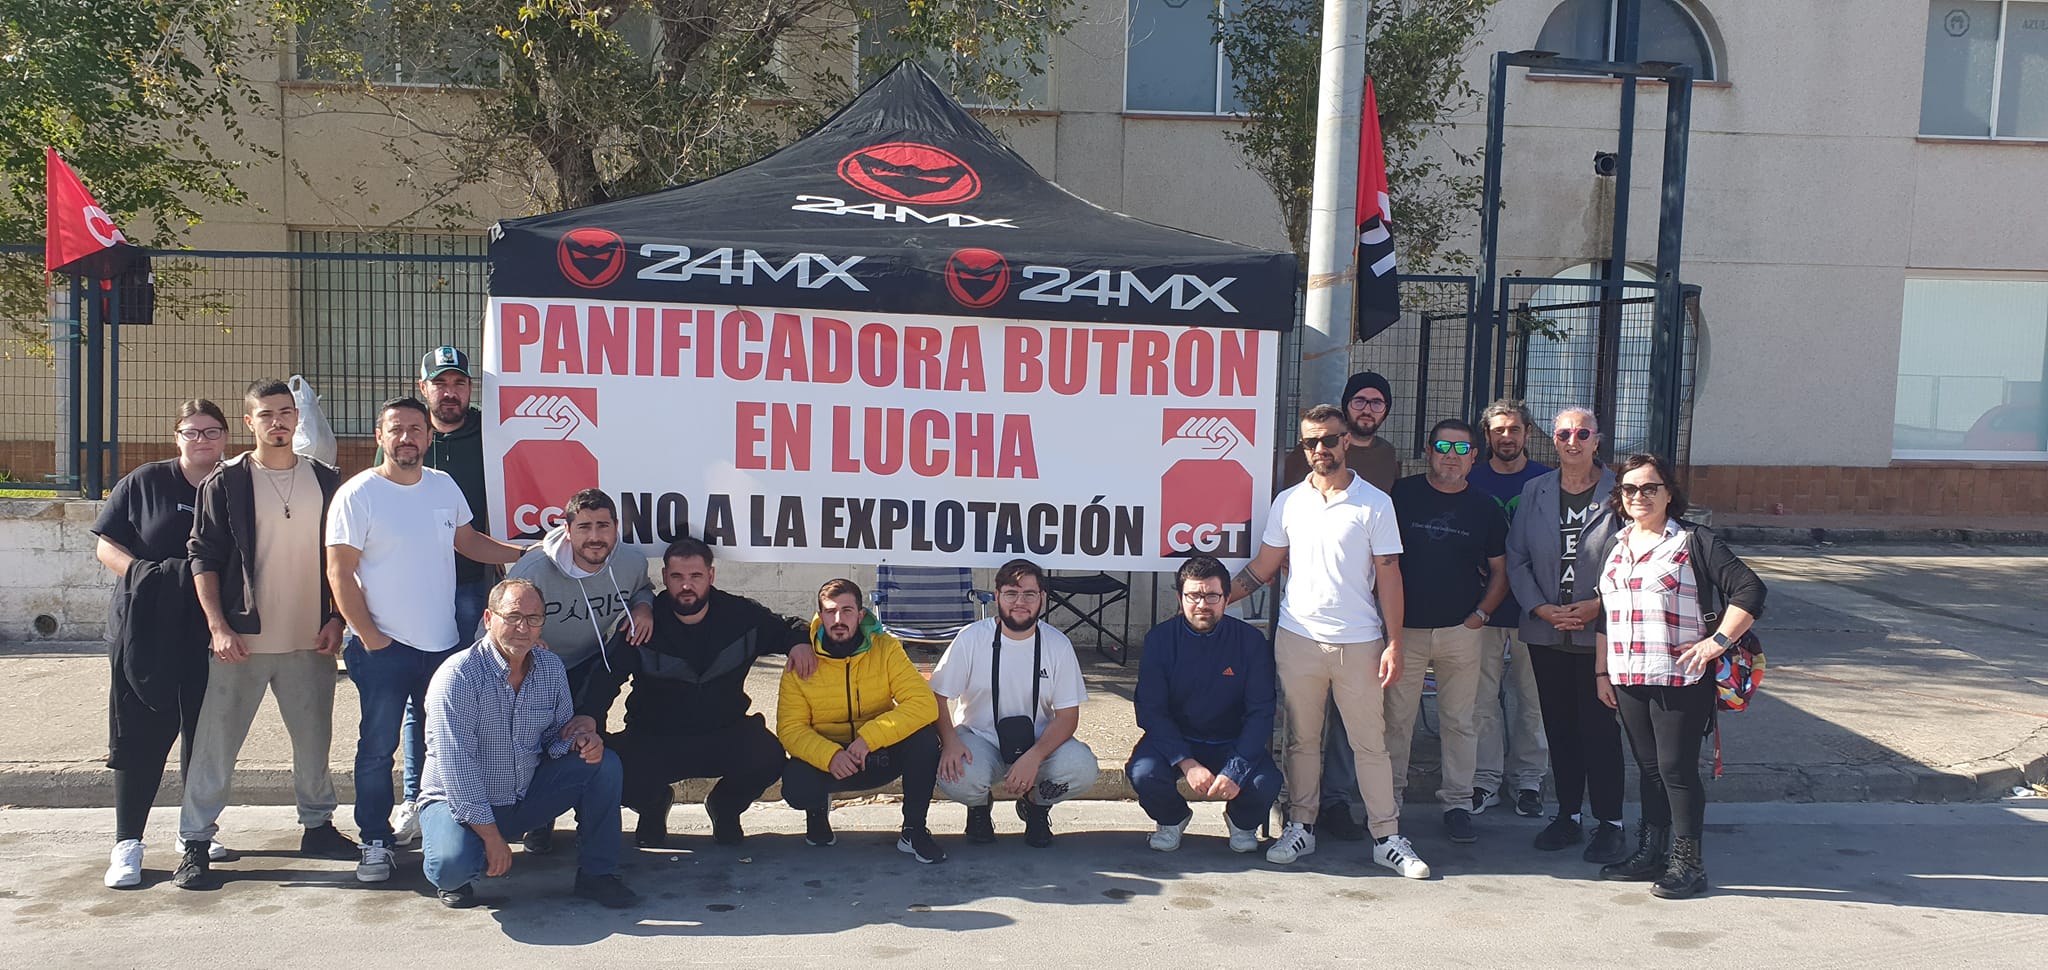 Trabajadores de la panificadora Butrón de Chiclana, en huelga indefinida para reivindicar sus derechos laborales.